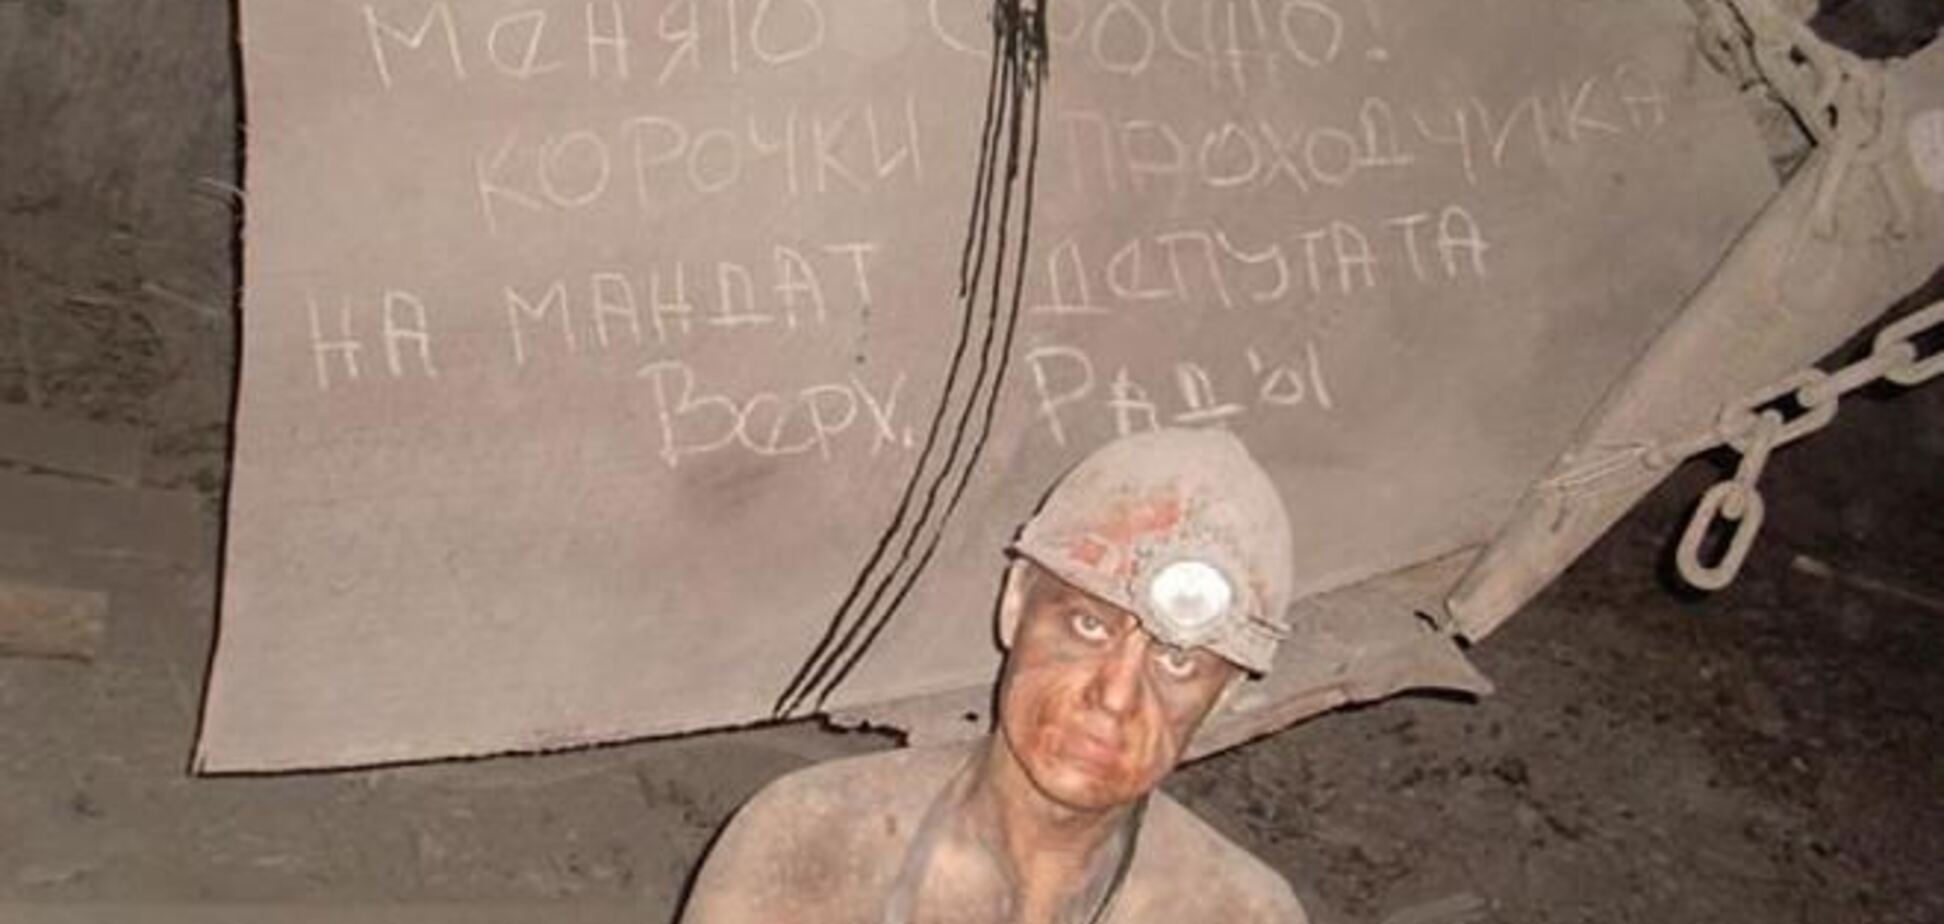 Луганських шахтарів і лікарів лякають, що 7% їх зарплати піде на ремонт Майдану - правозахисник